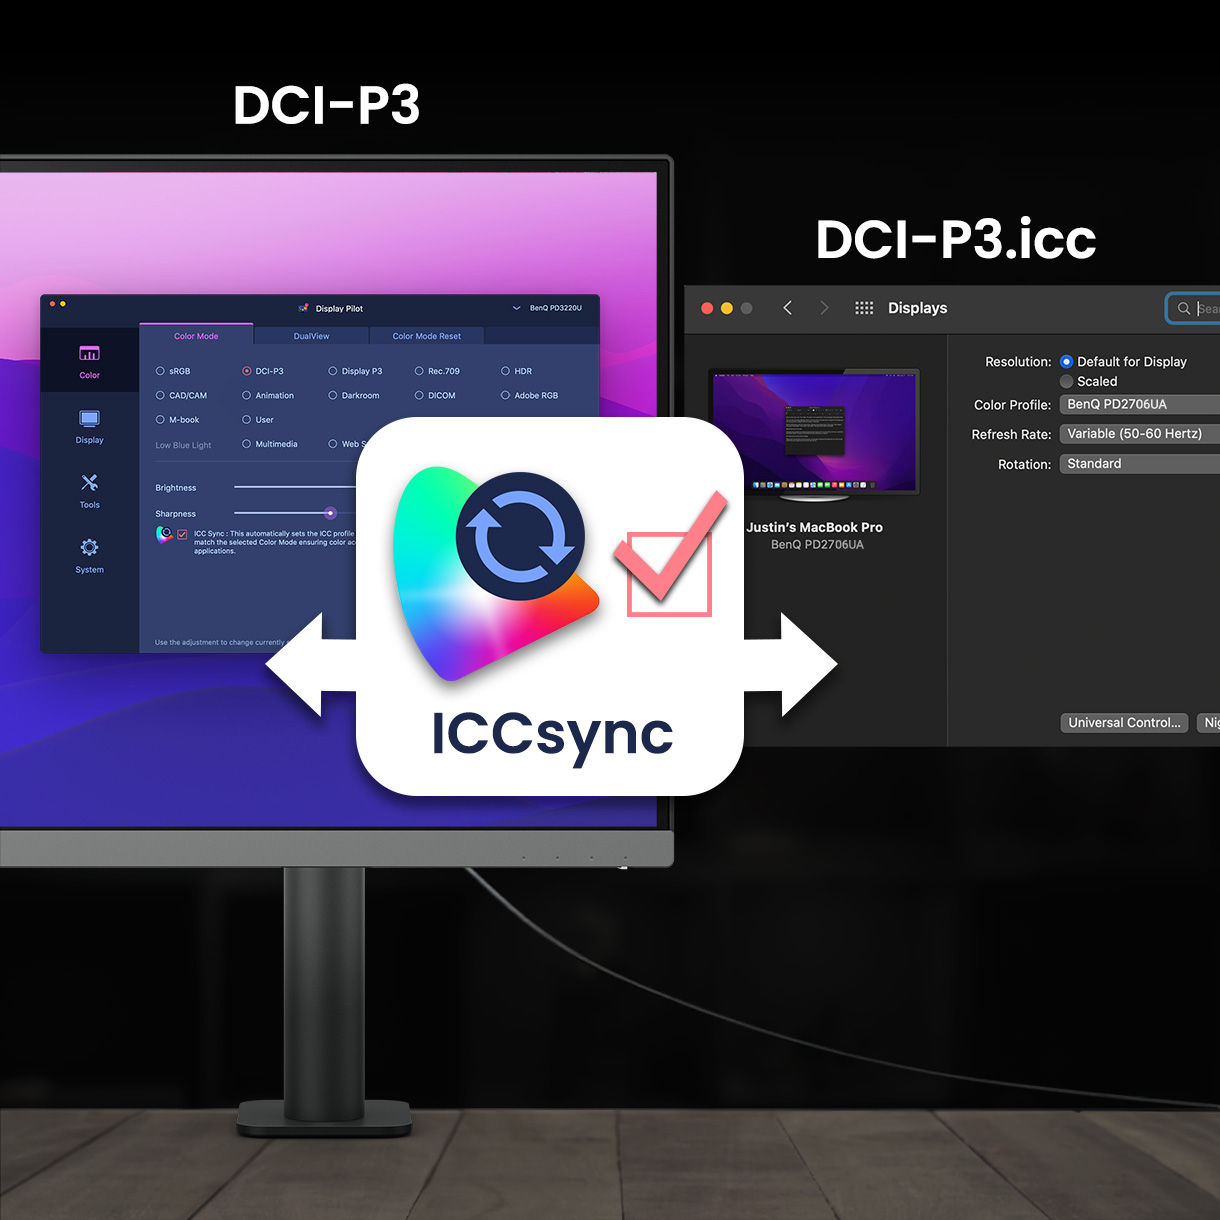 BenQ ICCsync potriveşte şi sincronizează automat profilurile ICC pe monitor atunci când schimbaţi modurile de culoare şi, de asemenea, între laptopul dvs. şi monitorul BenQ. Toate acestea se fac instantaneu.